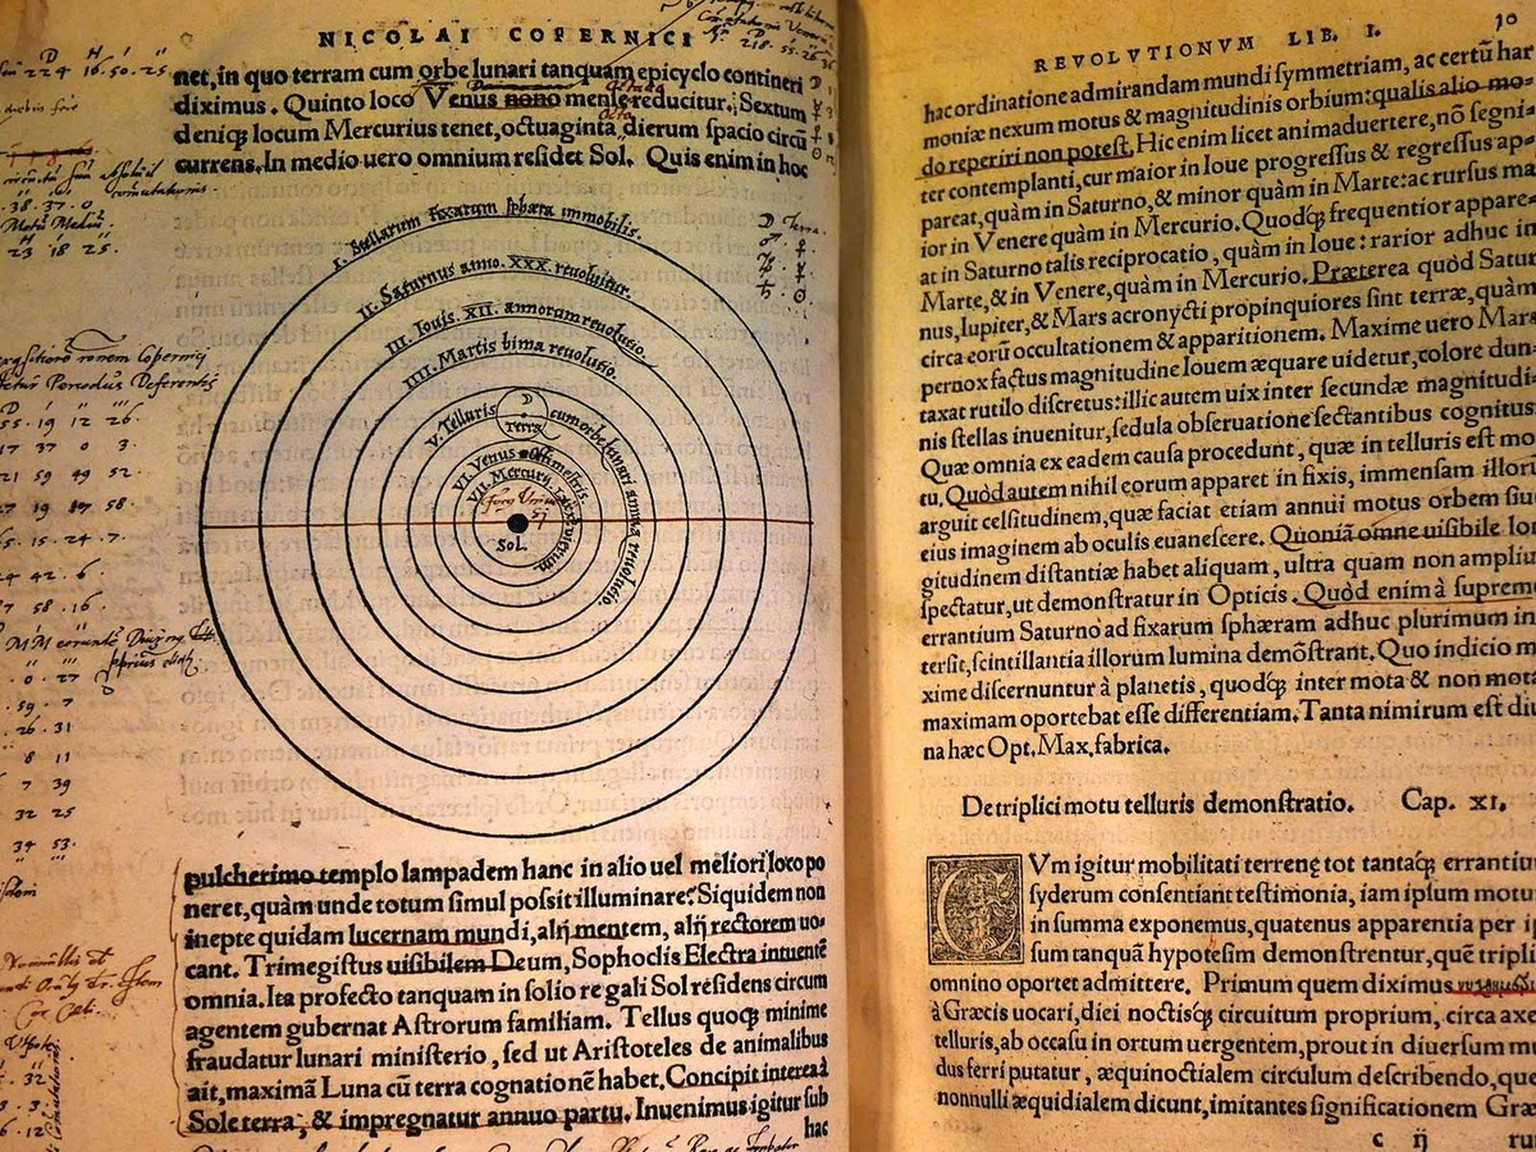 Kopernikus&#039; Werk «De revolutionibus orbium coelestium» sorgte in kirchlichen Kreisen für Aufregung.
https://commons.wikimedia.org/wiki/File:Nicolai_Copernici_Torinensis_De_revolutionibus_orbium_c ...